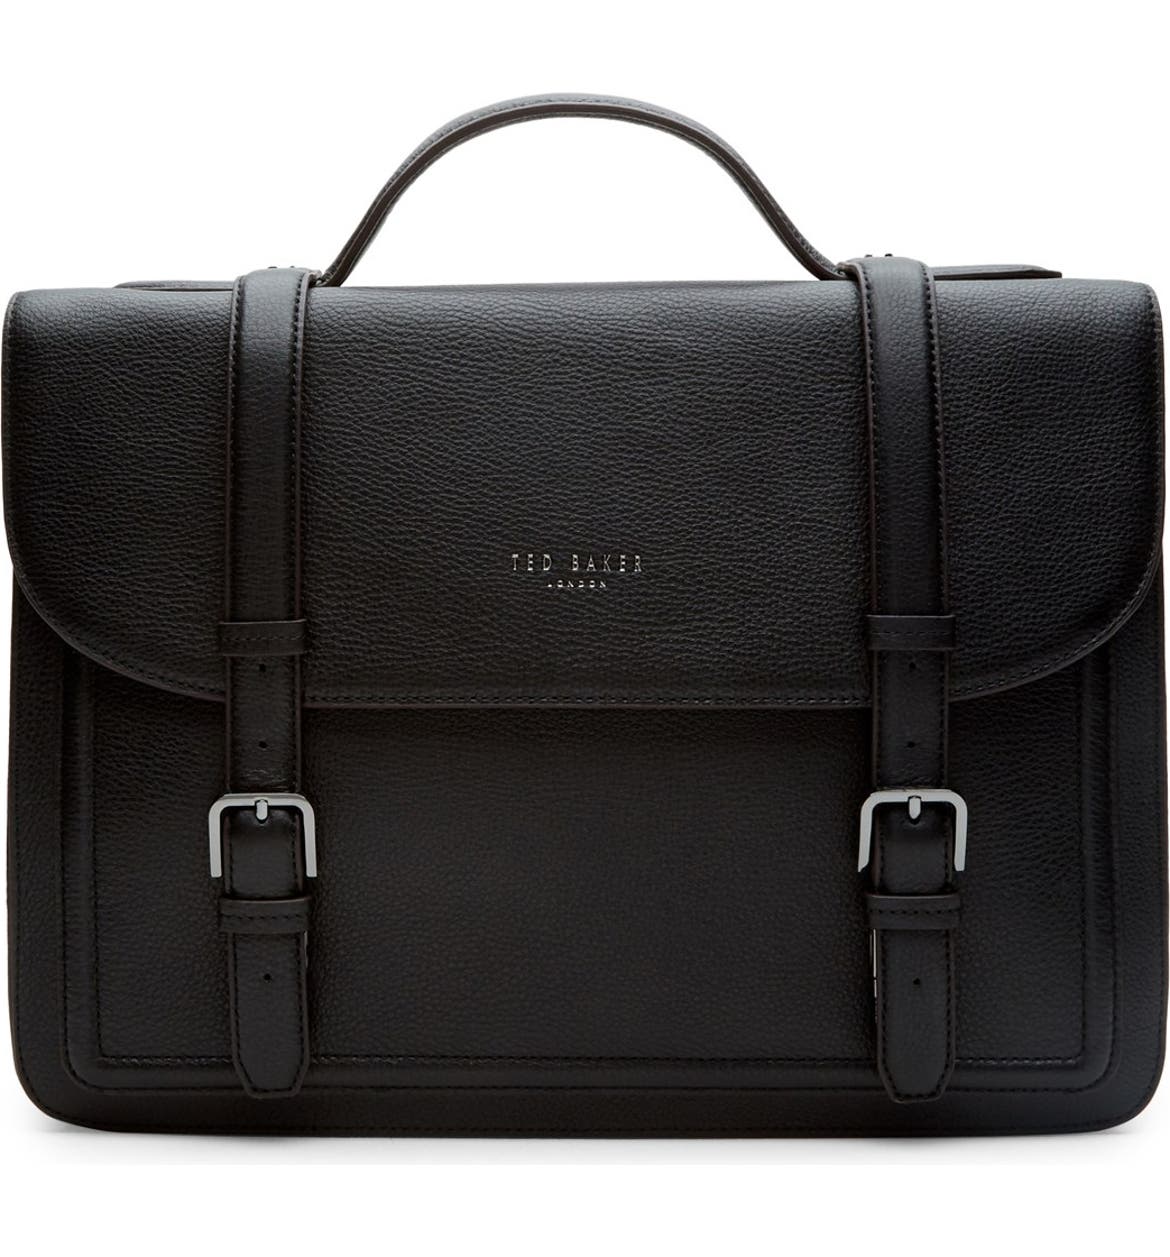 Ted Baker London 'Jagala' Pebbled Leather Messenger Bag | Nordstrom